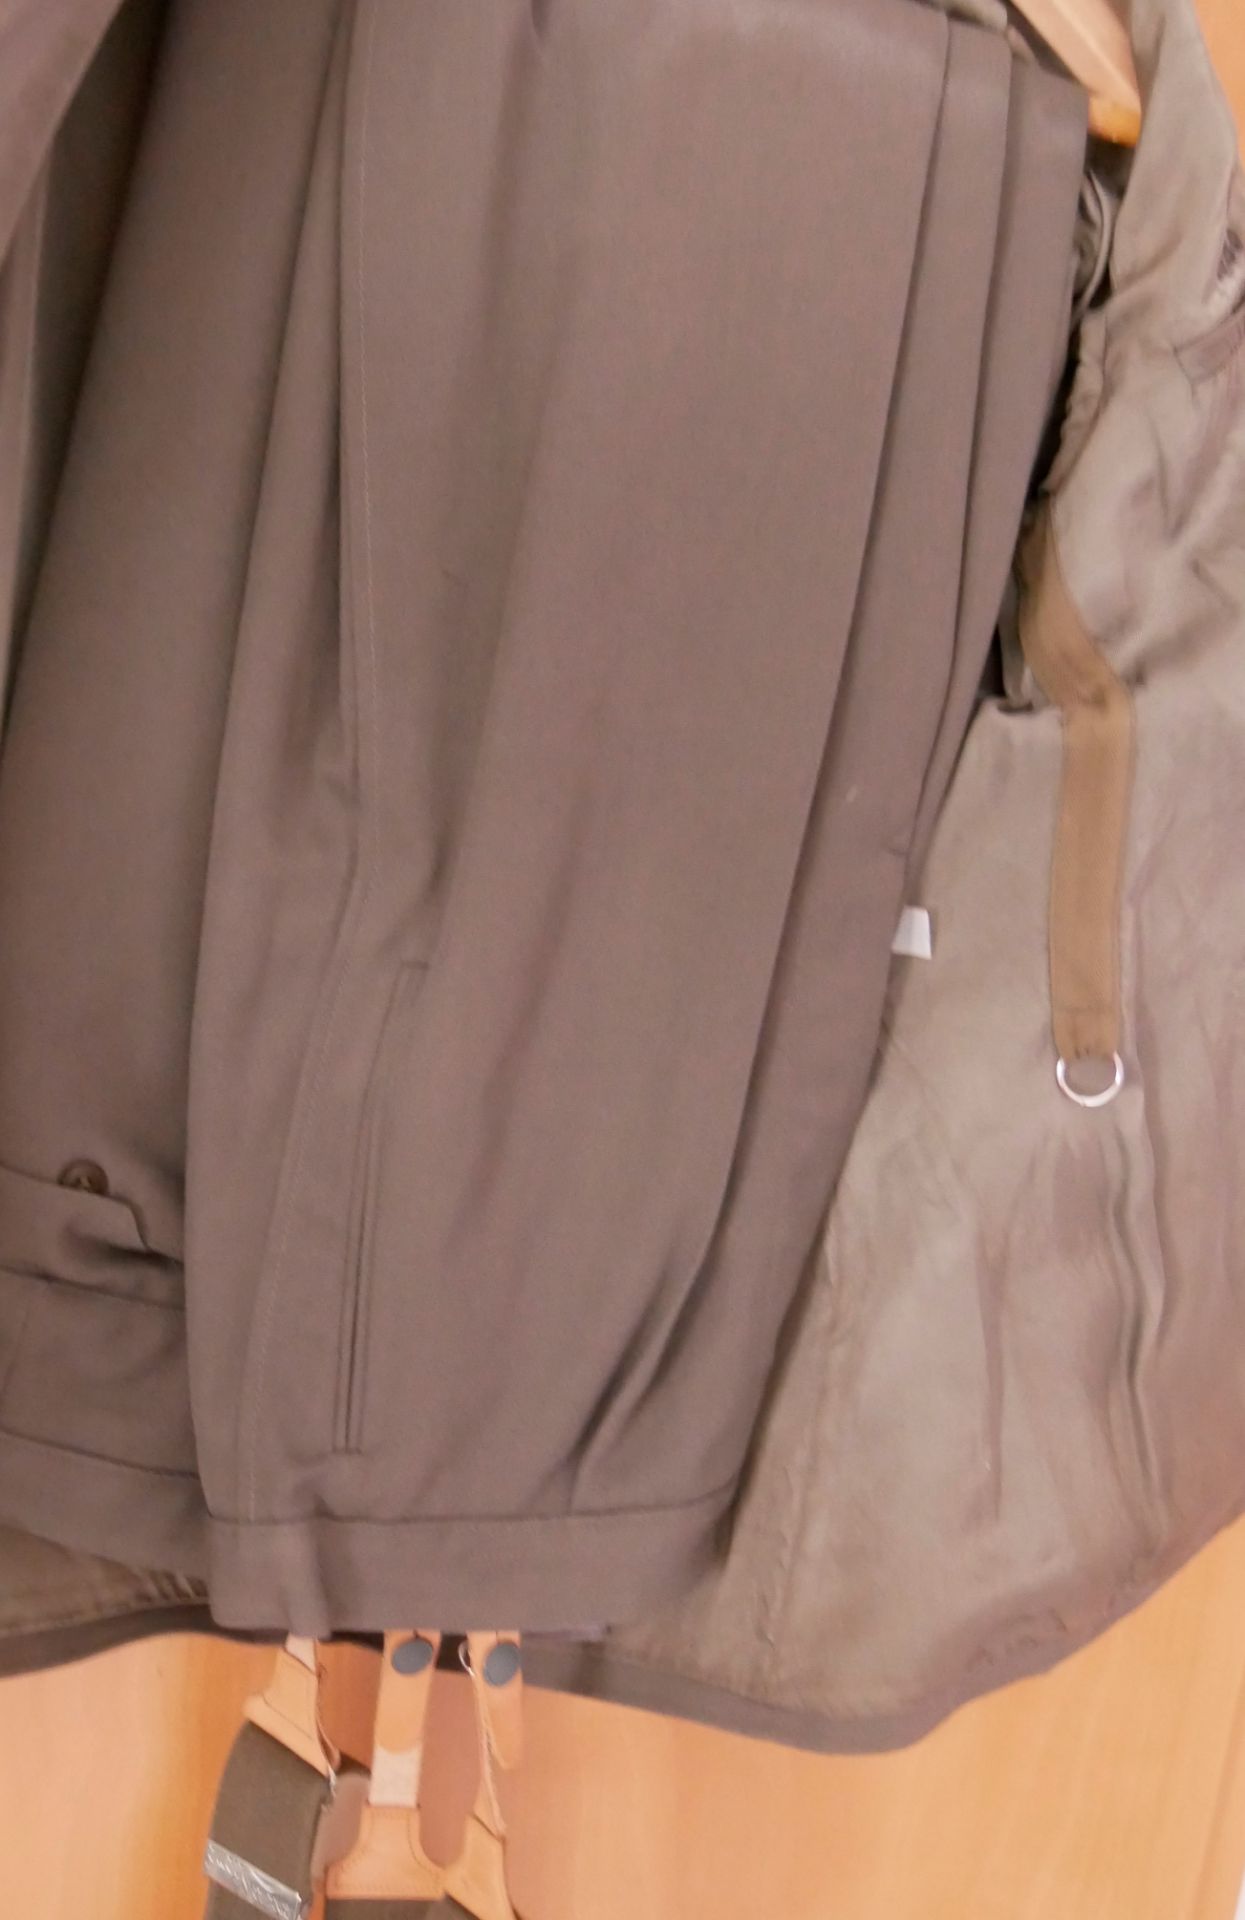 Aus Sammelauflösung! DDR Uniform Jacke mit Effekten und dazugehöriger Hose und Hosenträger, Wach- - Bild 2 aus 2